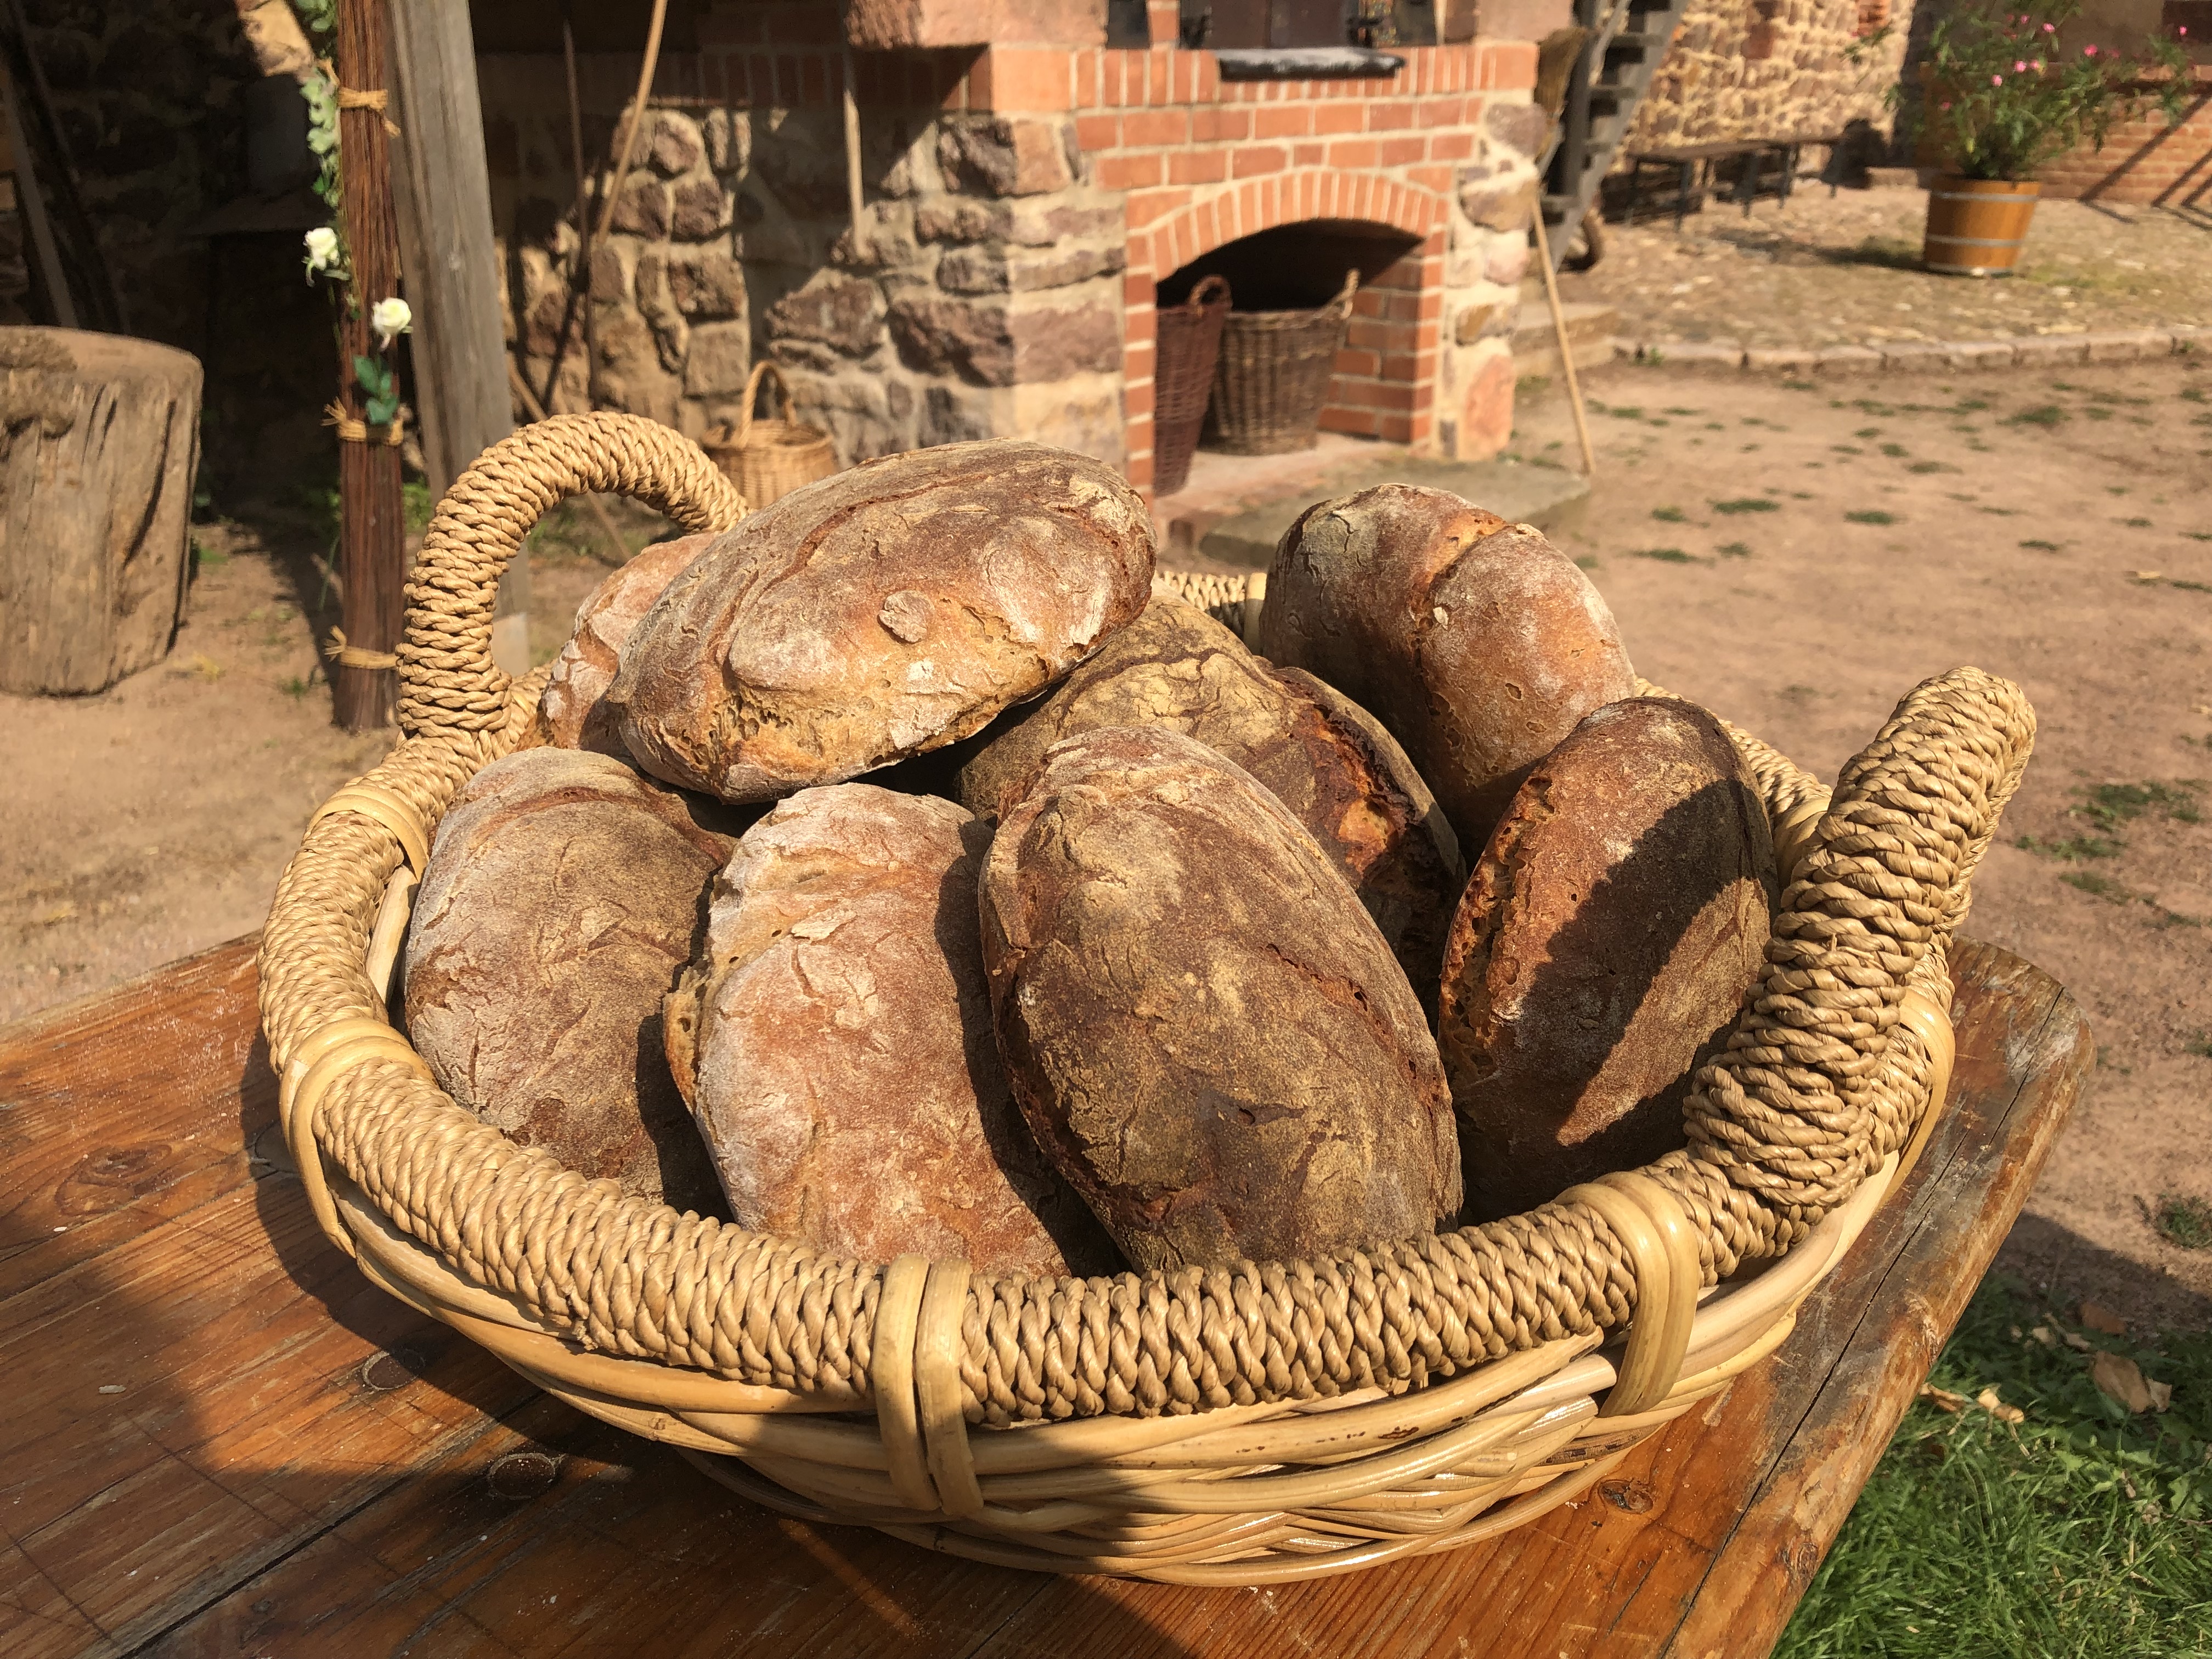 Brotkorb mit frisch gebackenen, runden Broten